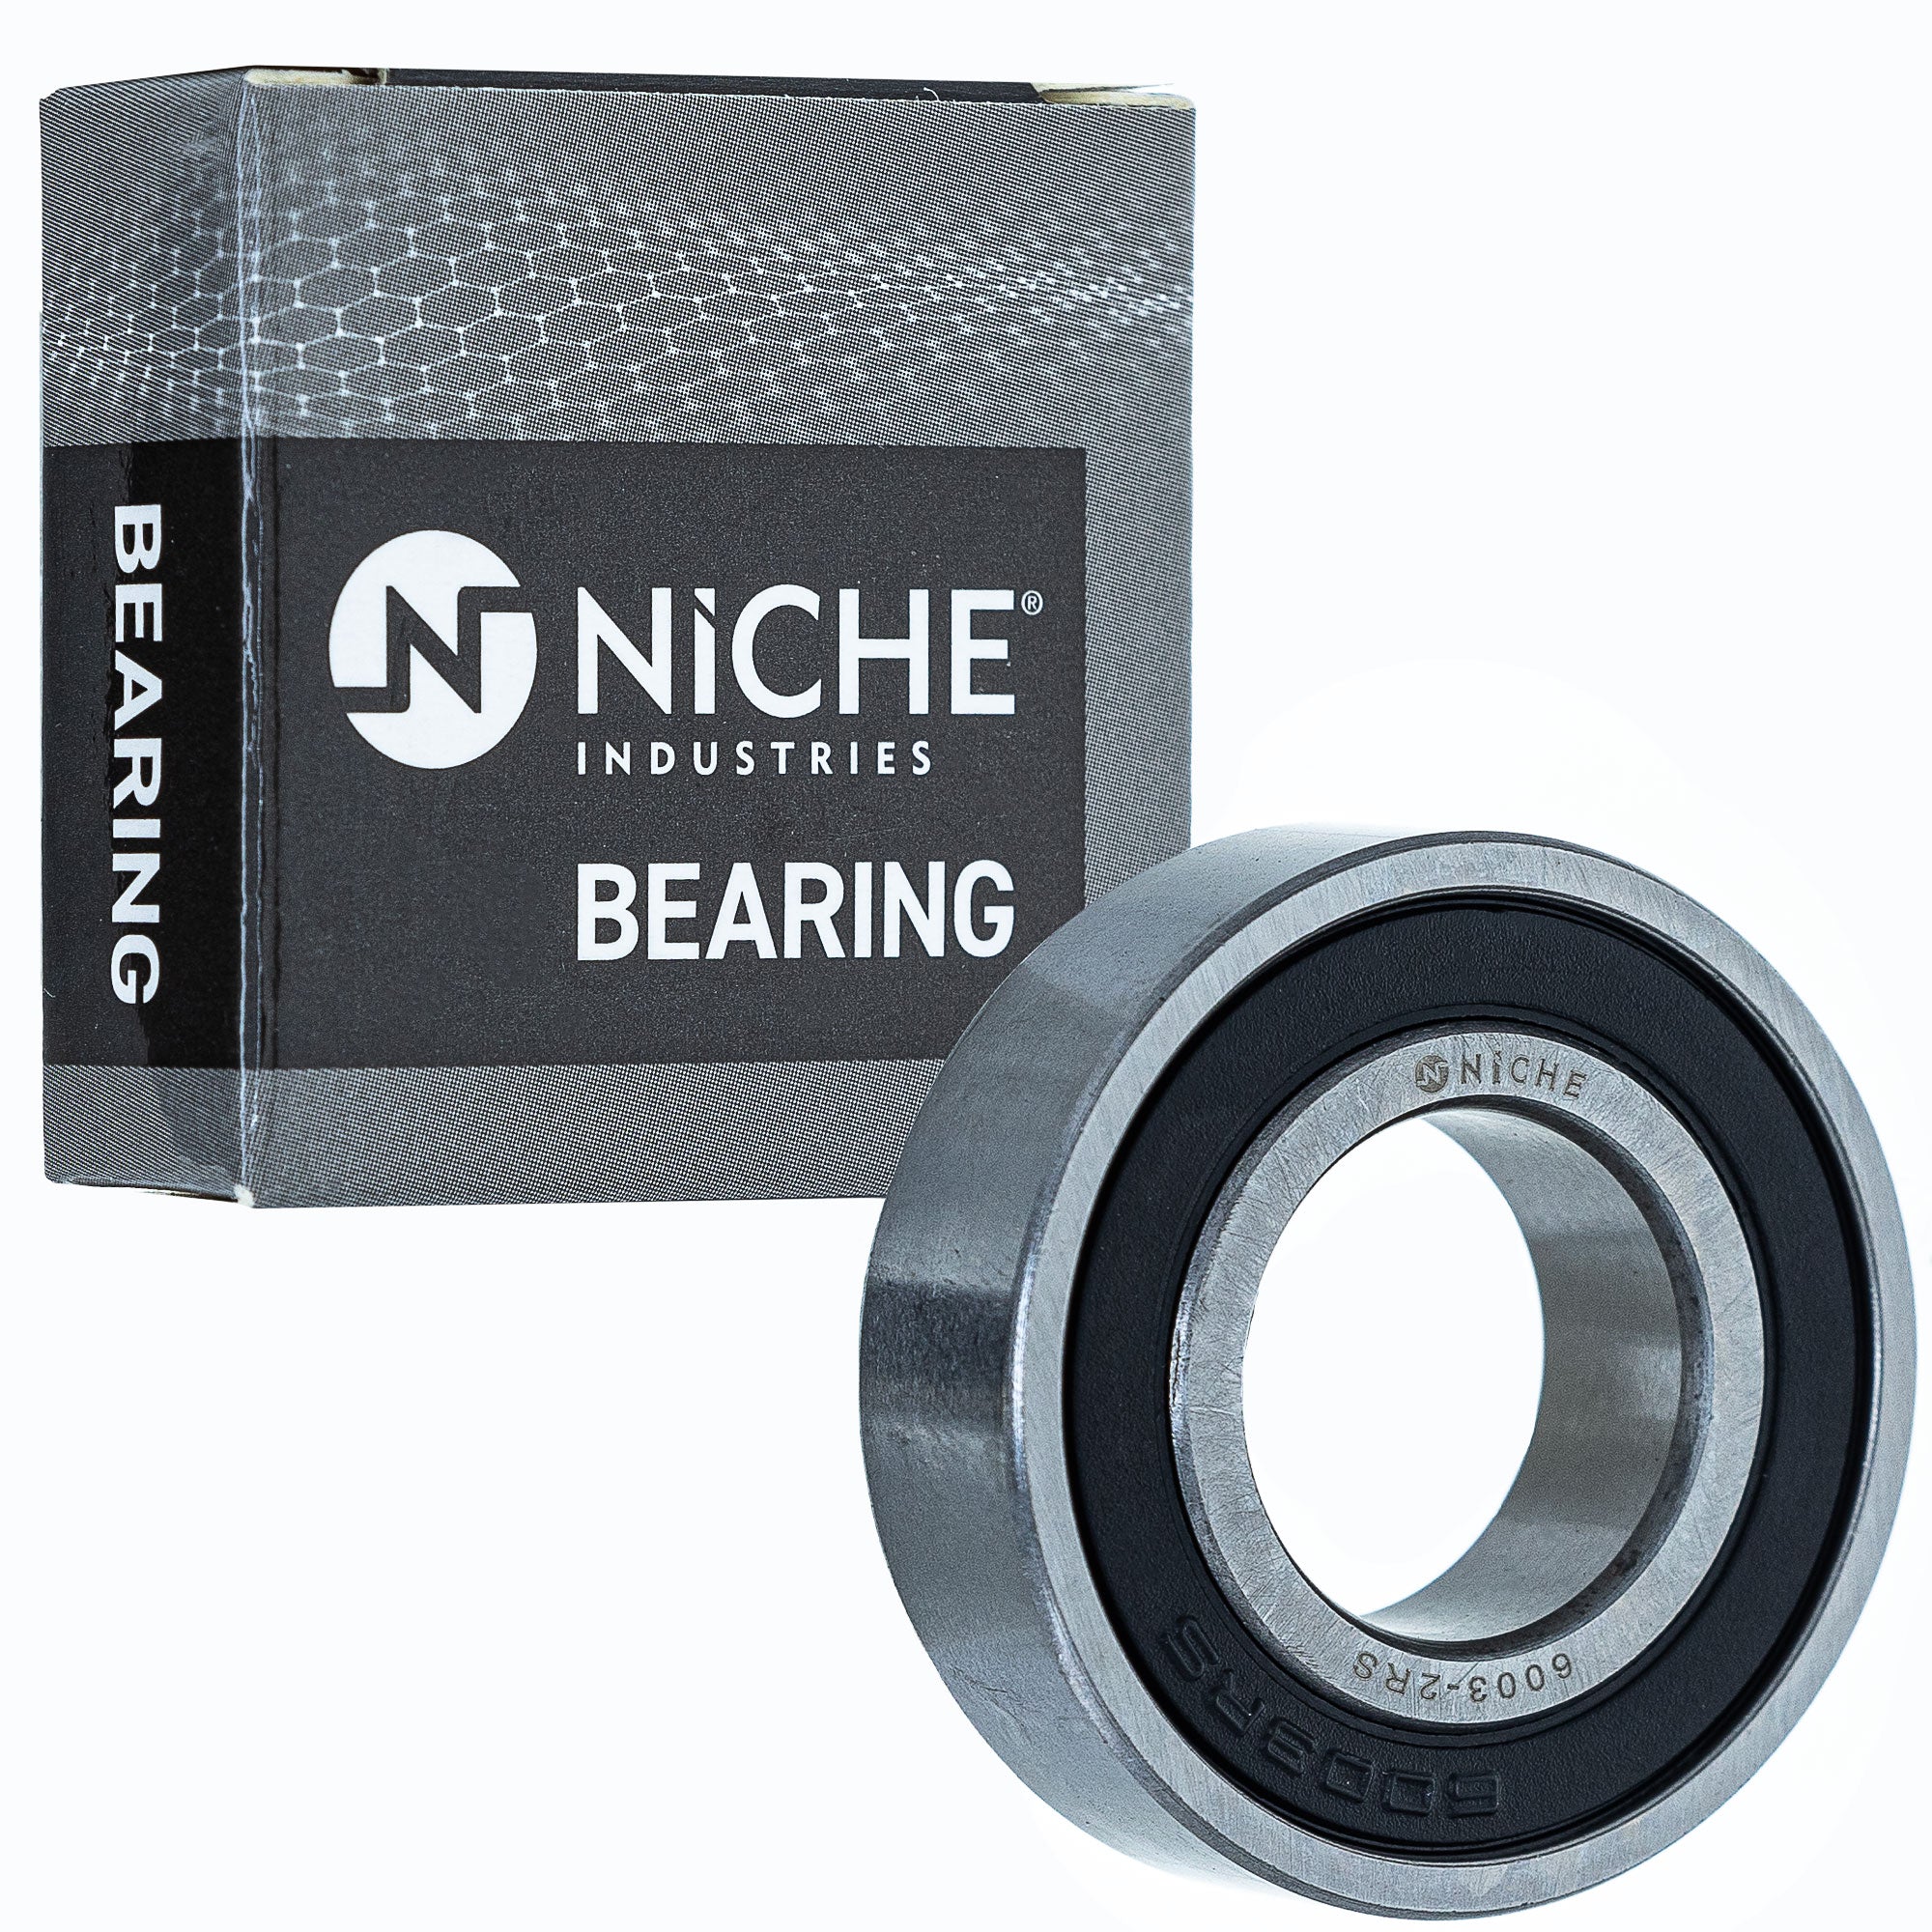 NICHE 519-CBB2238R Bearing for zOTHER Arctic Cat Textron Yamahauler